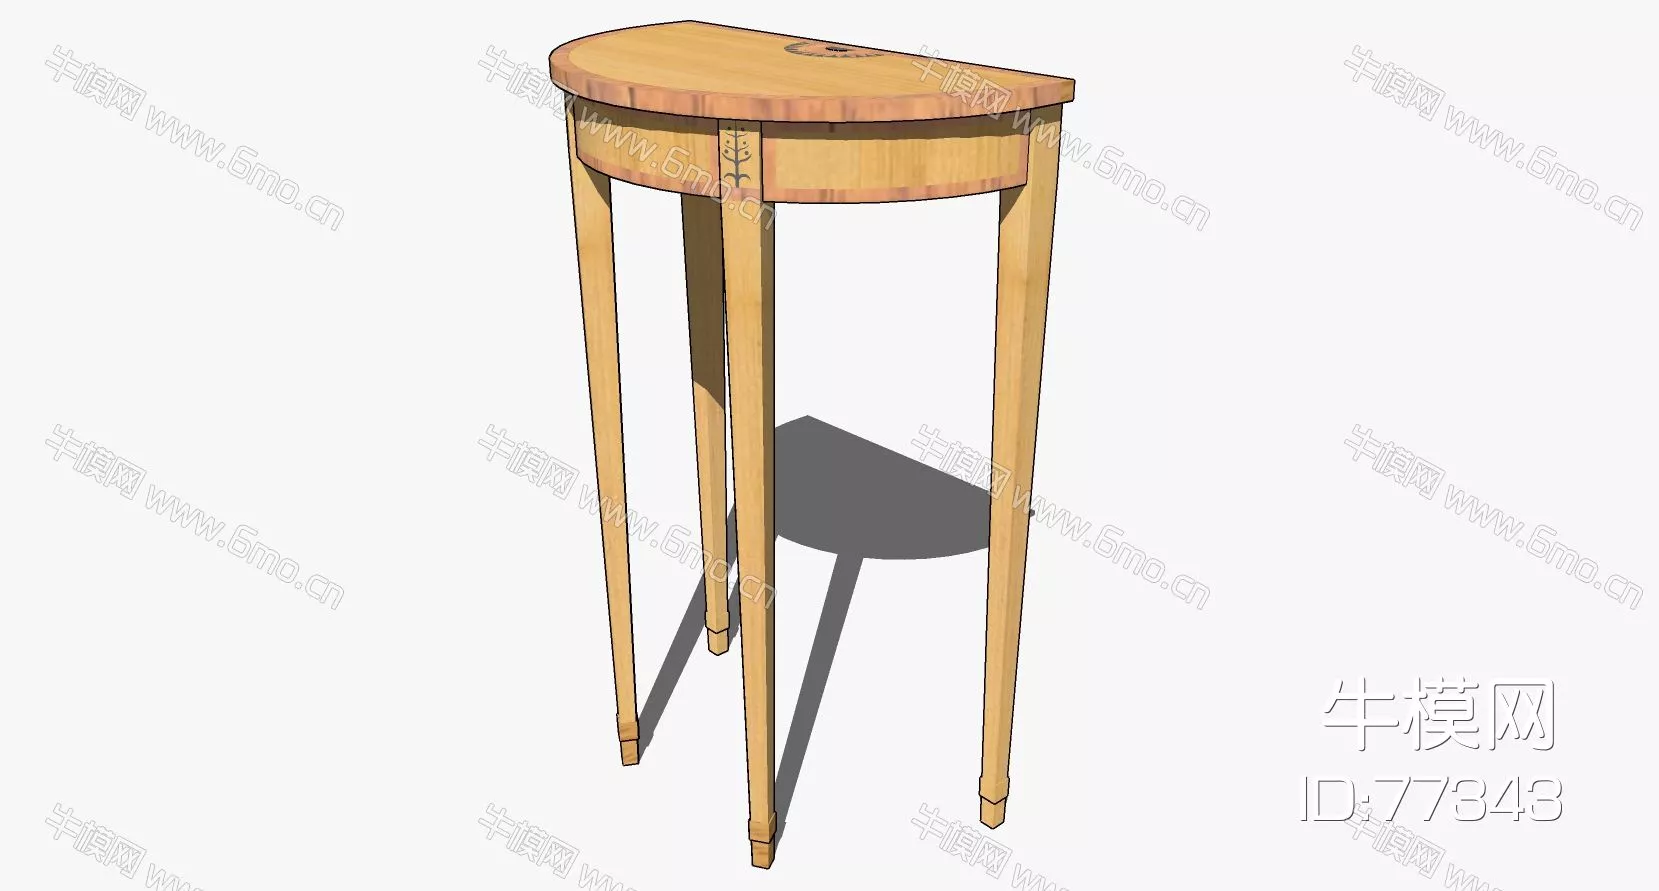 NORDIC SIDE TABLE - SKETCHUP 3D MODEL - ENSCAPE - 77343